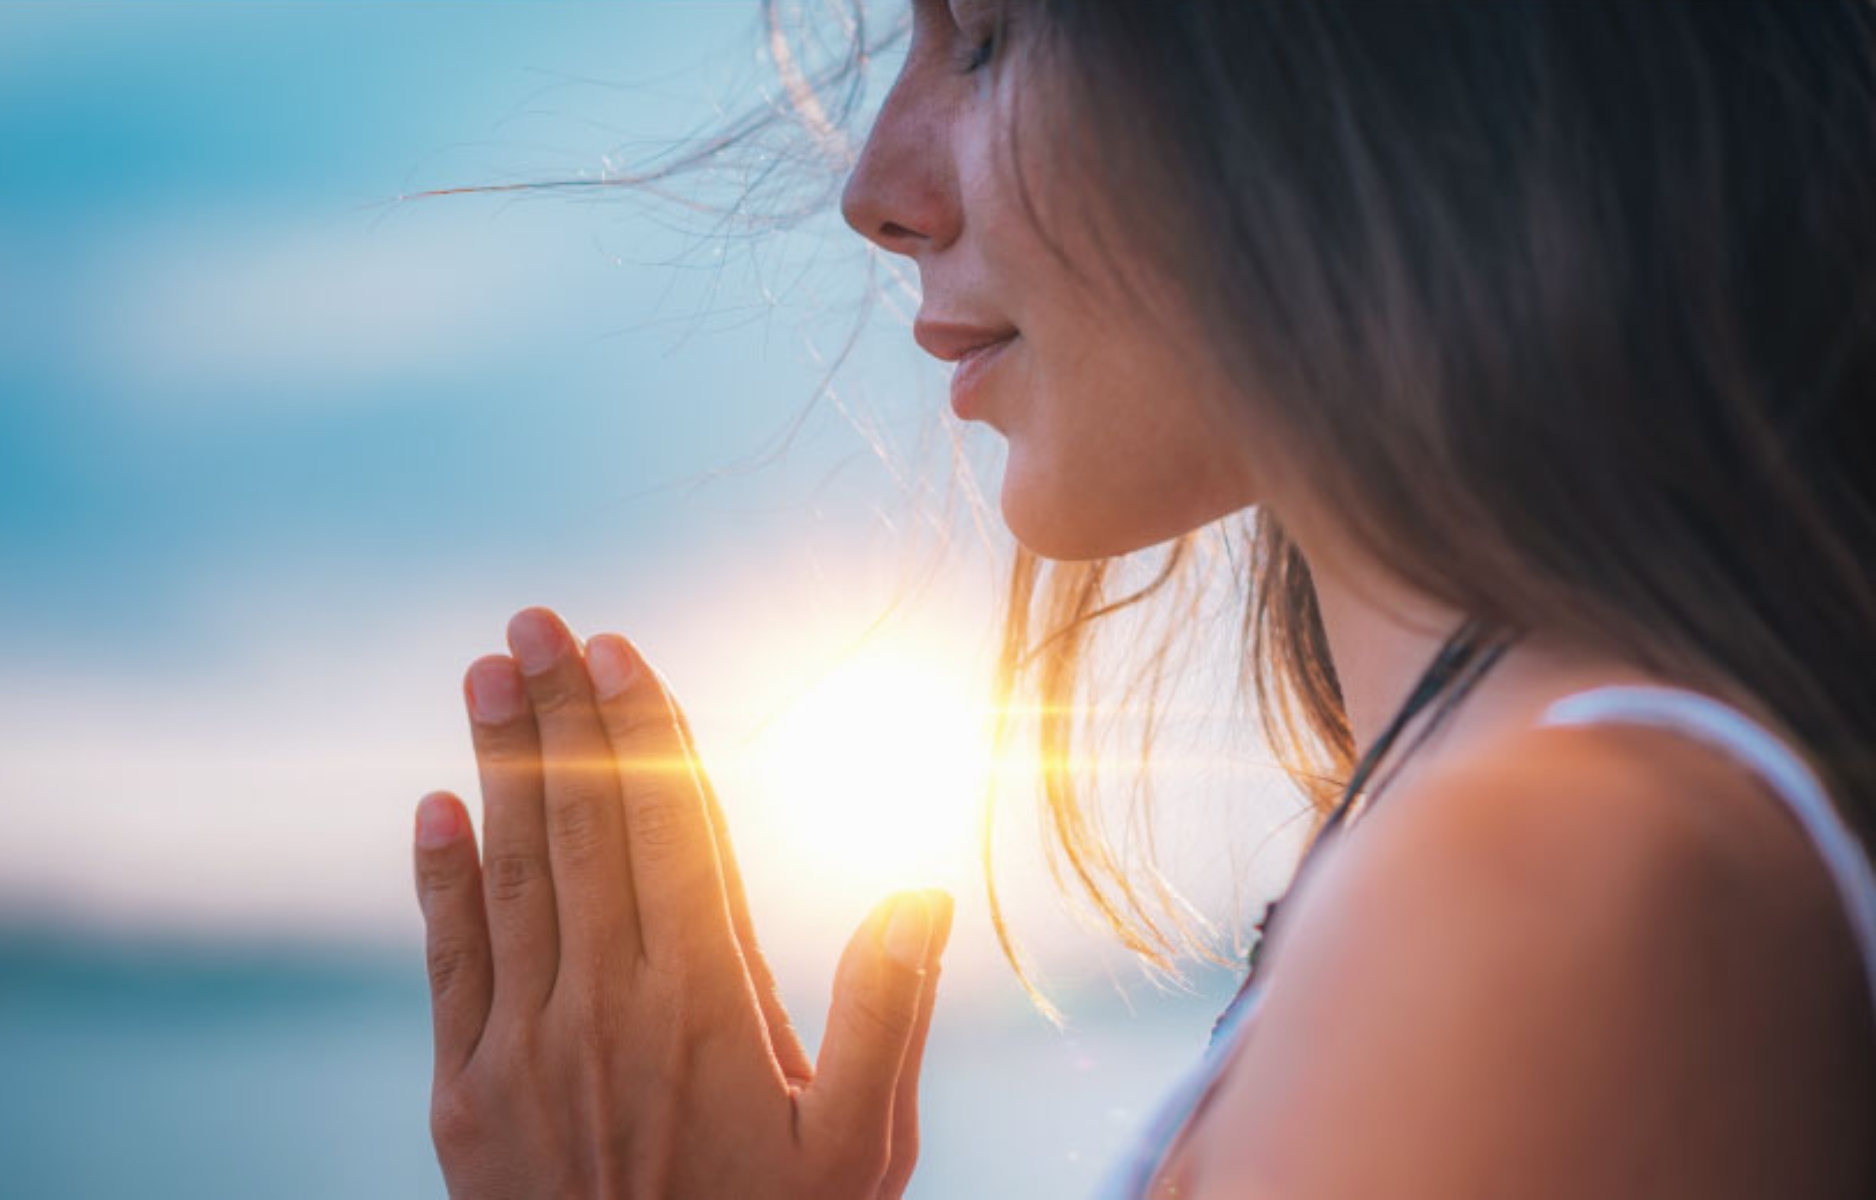 Πνευματική Αφύπνιση: Σημάδια για το ότι την βιώνεις και πώς να την αγκαλιάσεις